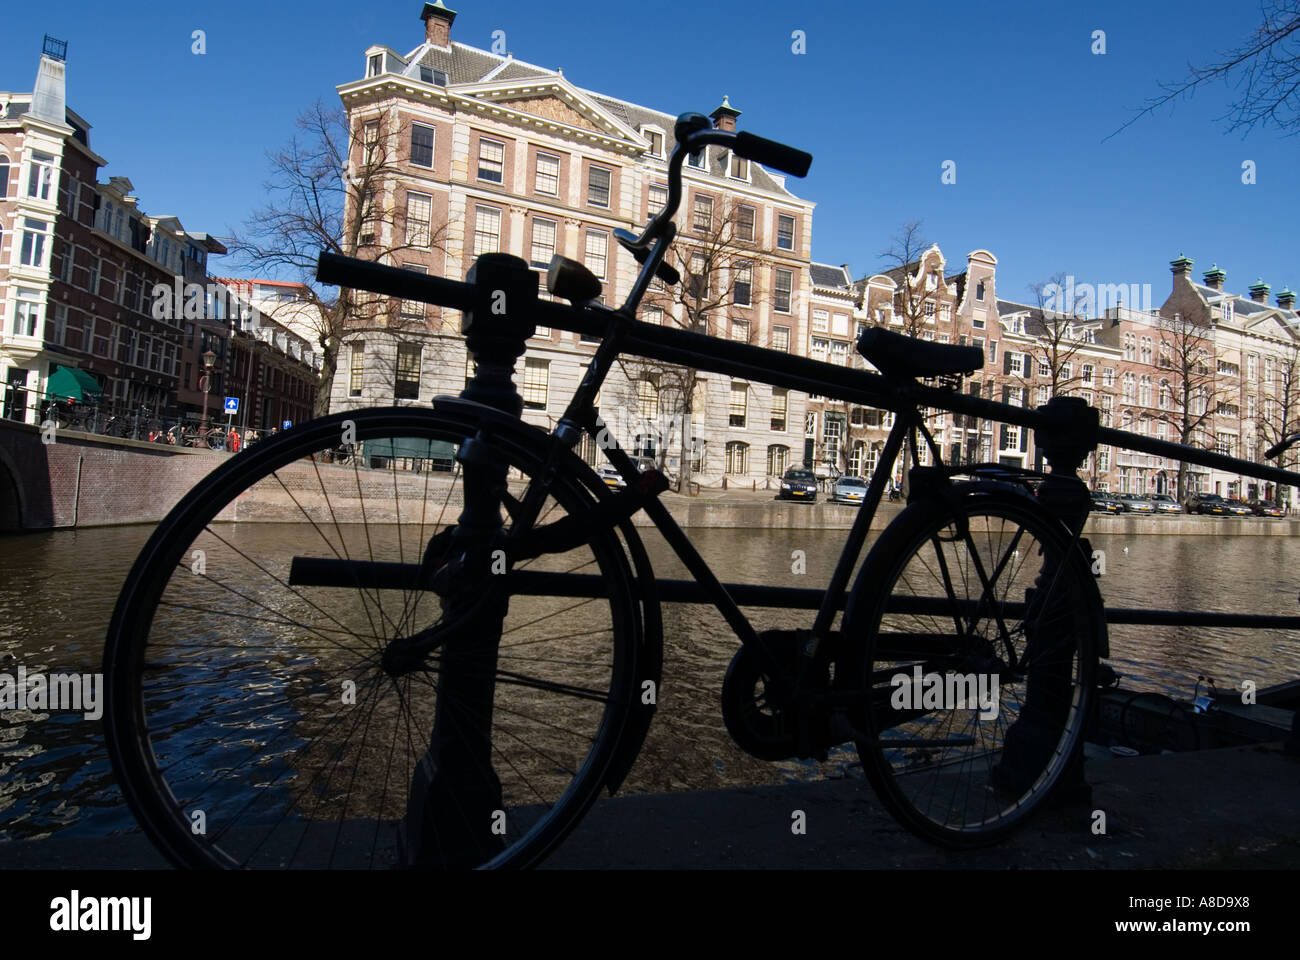 Location et de belles maisons anciennes le long de canal dans le quartier de Grachtengordel central Amsterdam Pays-Bas Banque D'Images